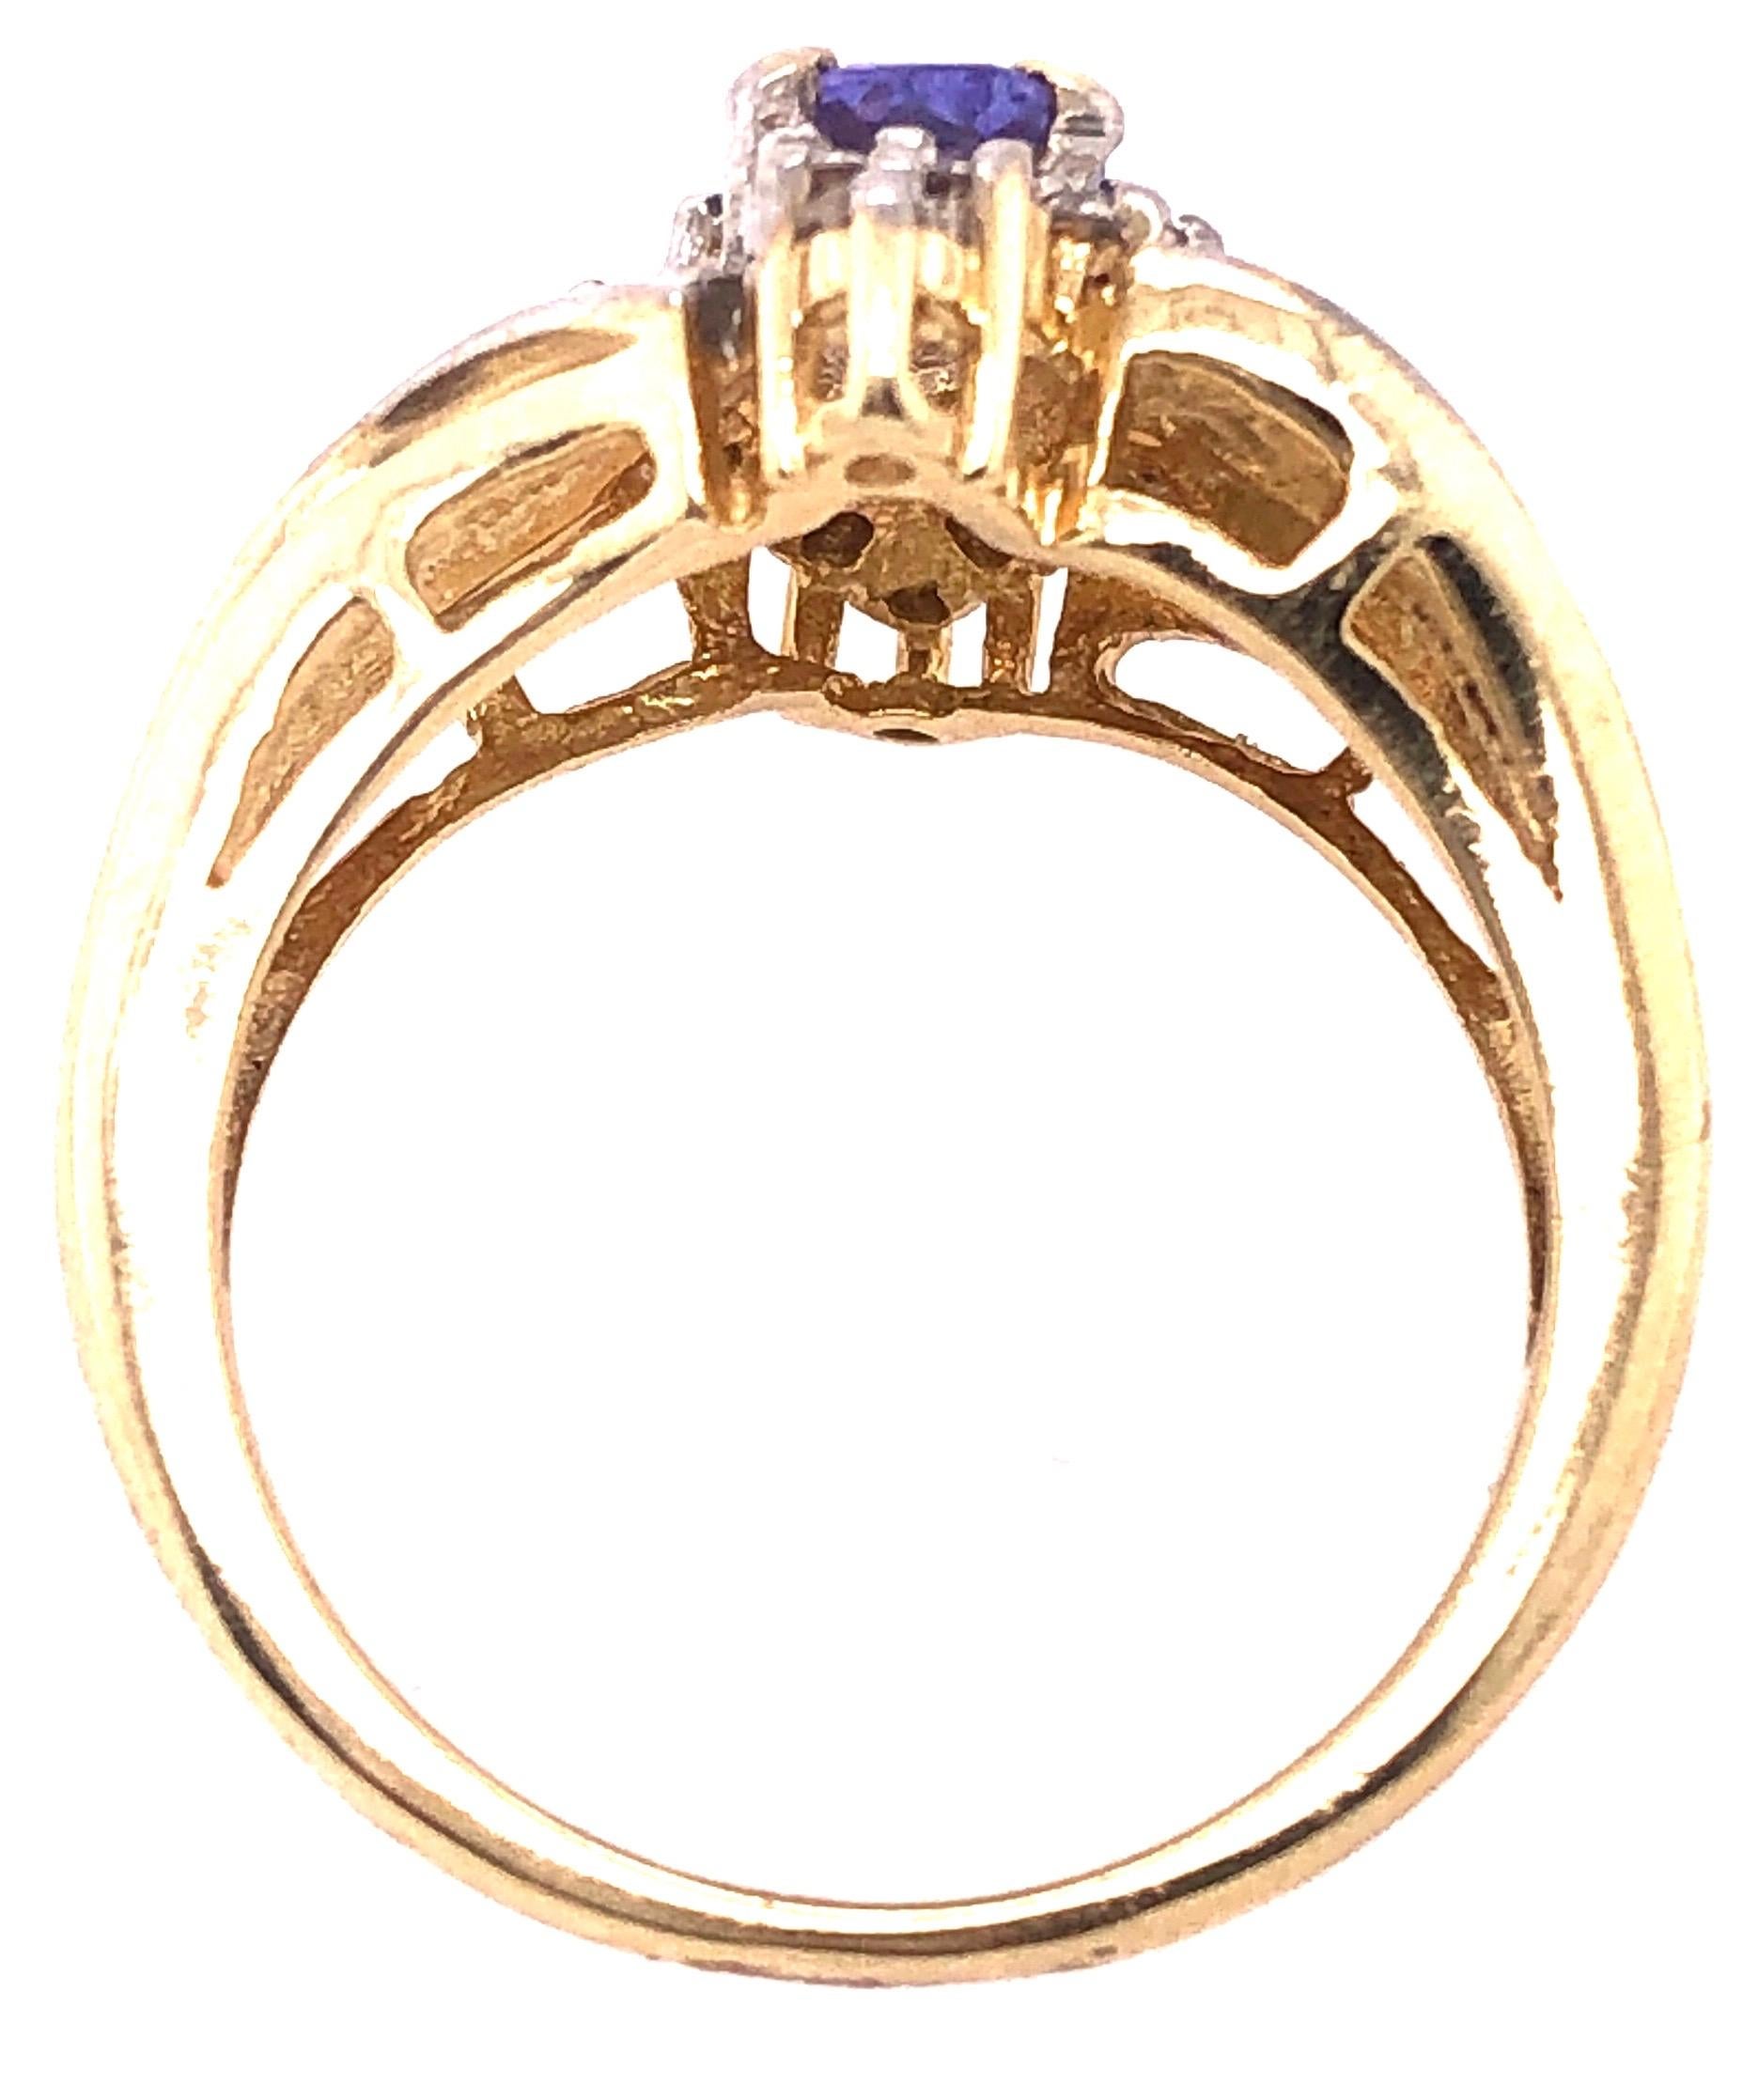 zeitgenössischer Ring aus 14 Karat Gelbgold mit Topas und Diamanten.
Größe 6
6 Gramm Gesamtgewicht.